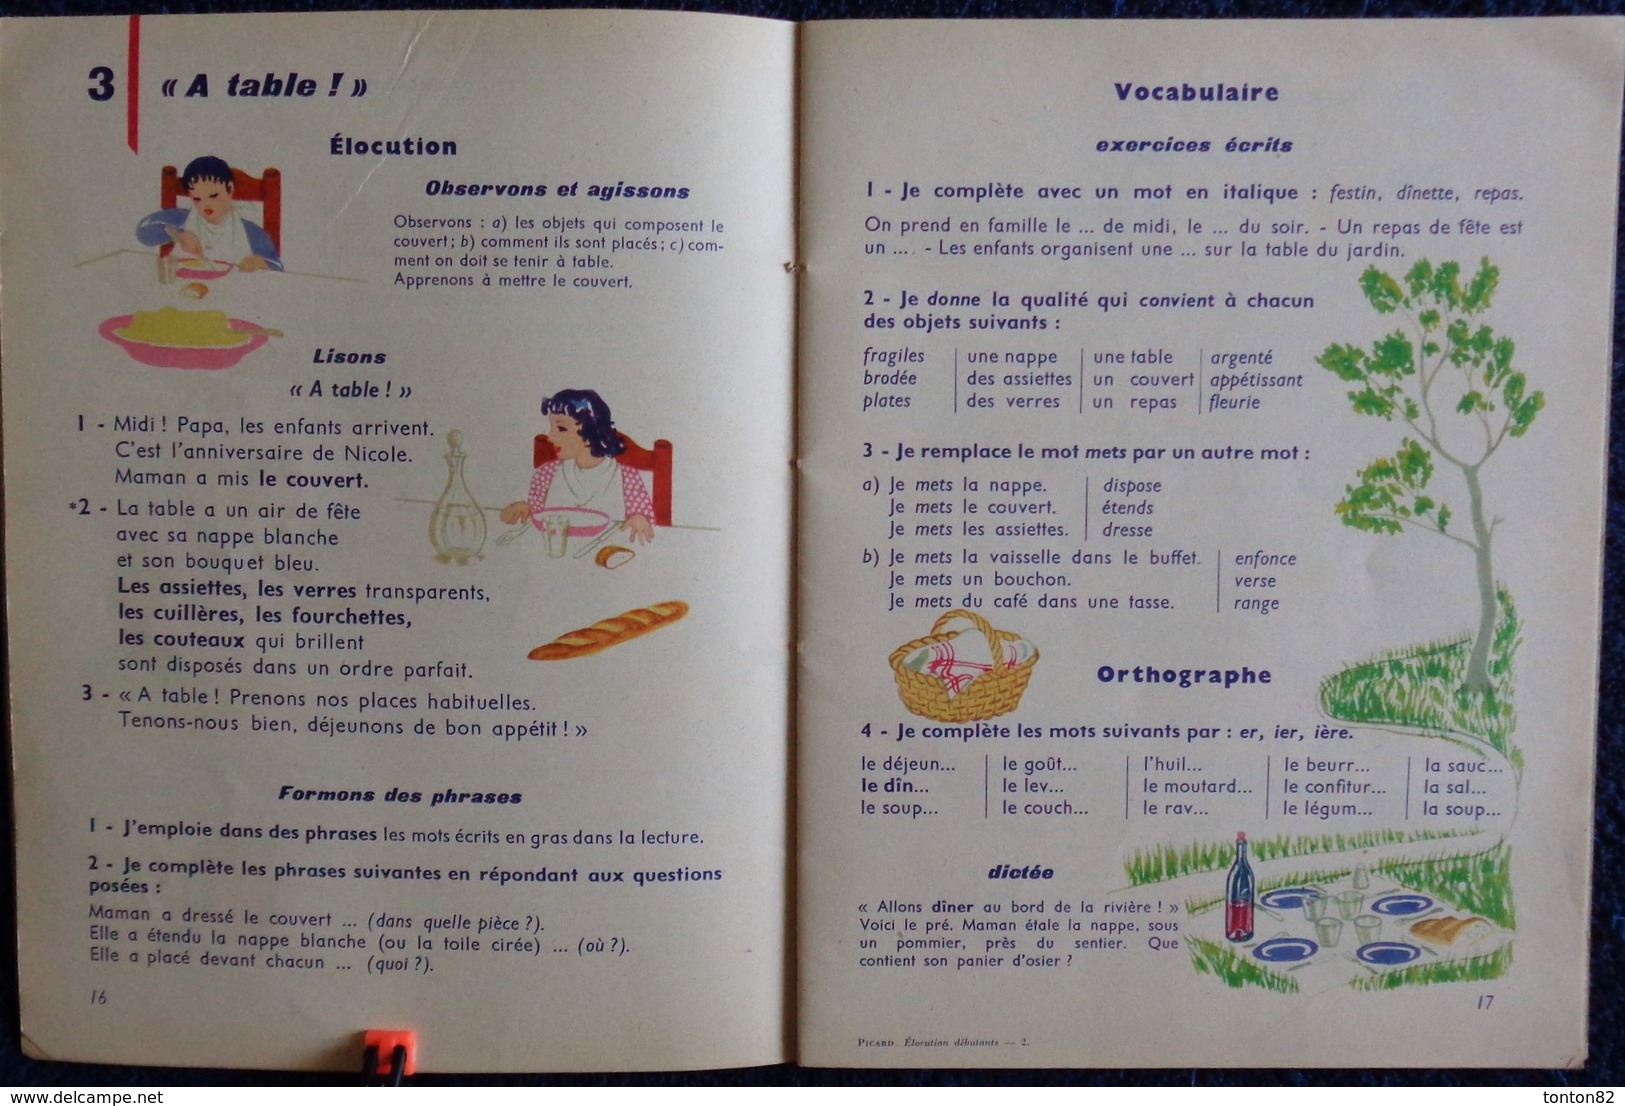 Mme M. Picard - Élocution et Vocabulaire pour les débutants -C.P / C.E - Librairie Armand Colin - ( 1961 ) .